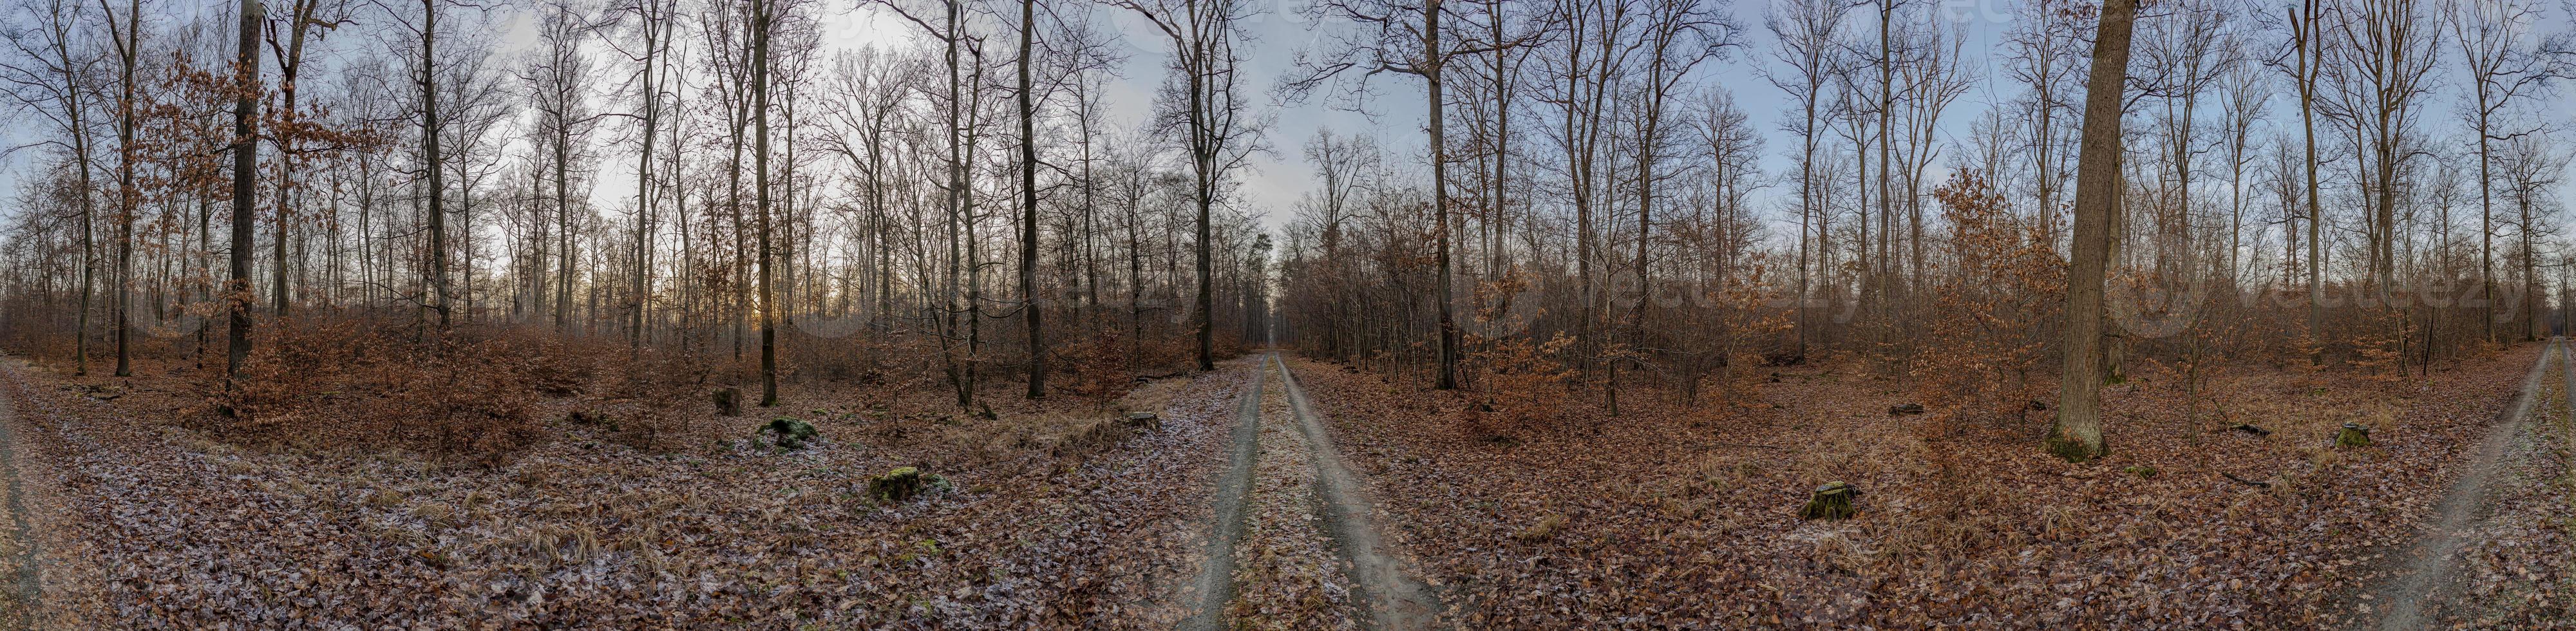 Panoramabild eines Waldes mit Wegen, die vom Mittelpunkt des Fotos in verschiedene Richtungen abzweigen